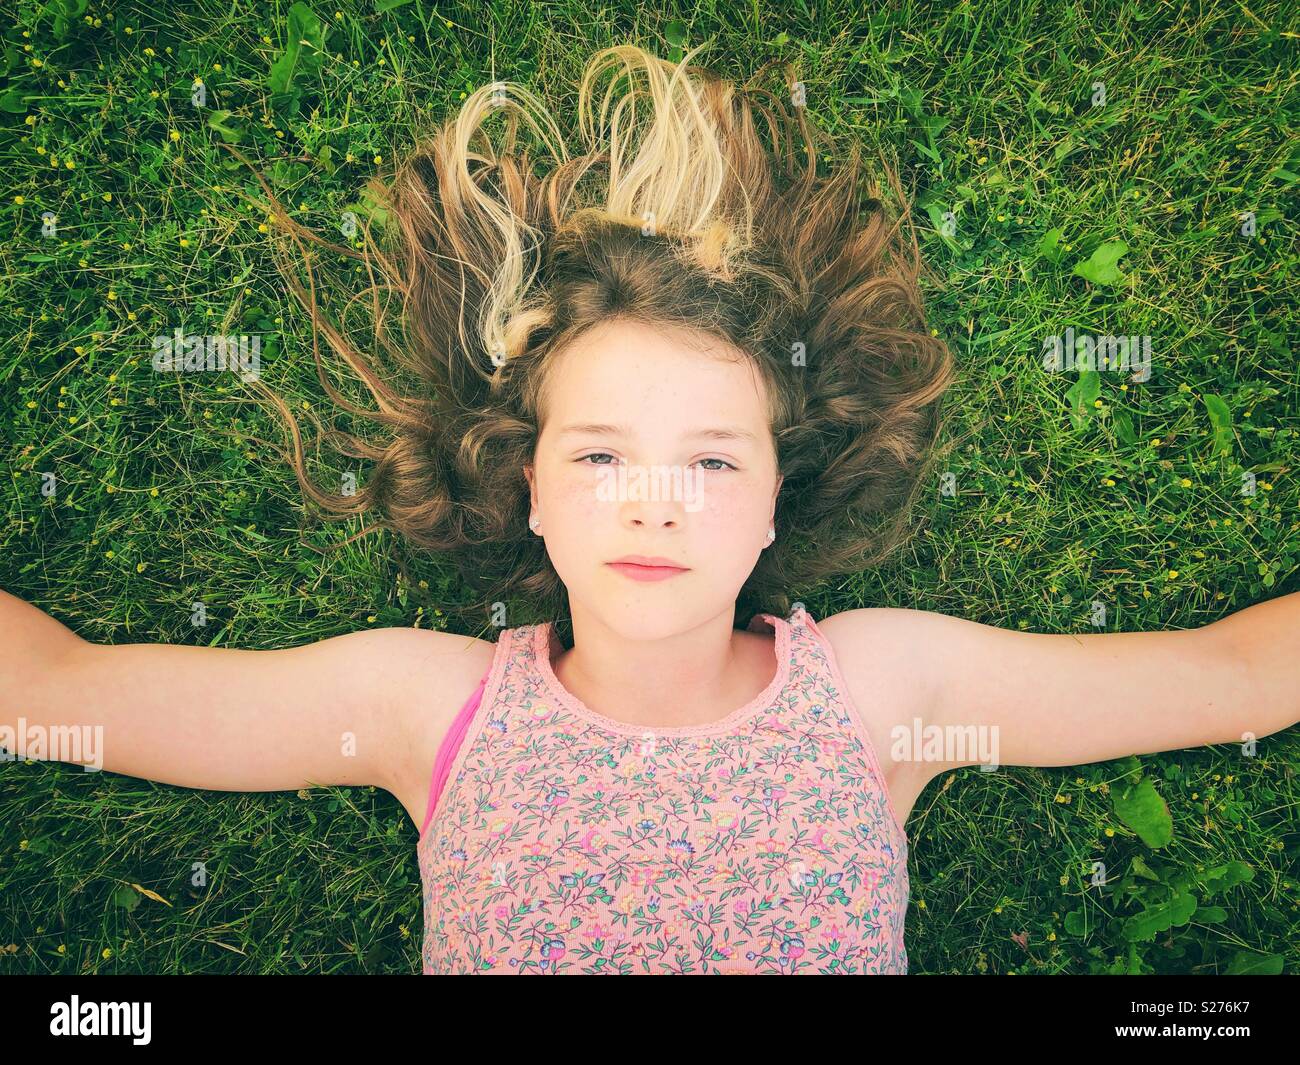 11 anno vecchia ragazza posa in erba con braccia e espressione seria sul suo viso Foto Stock